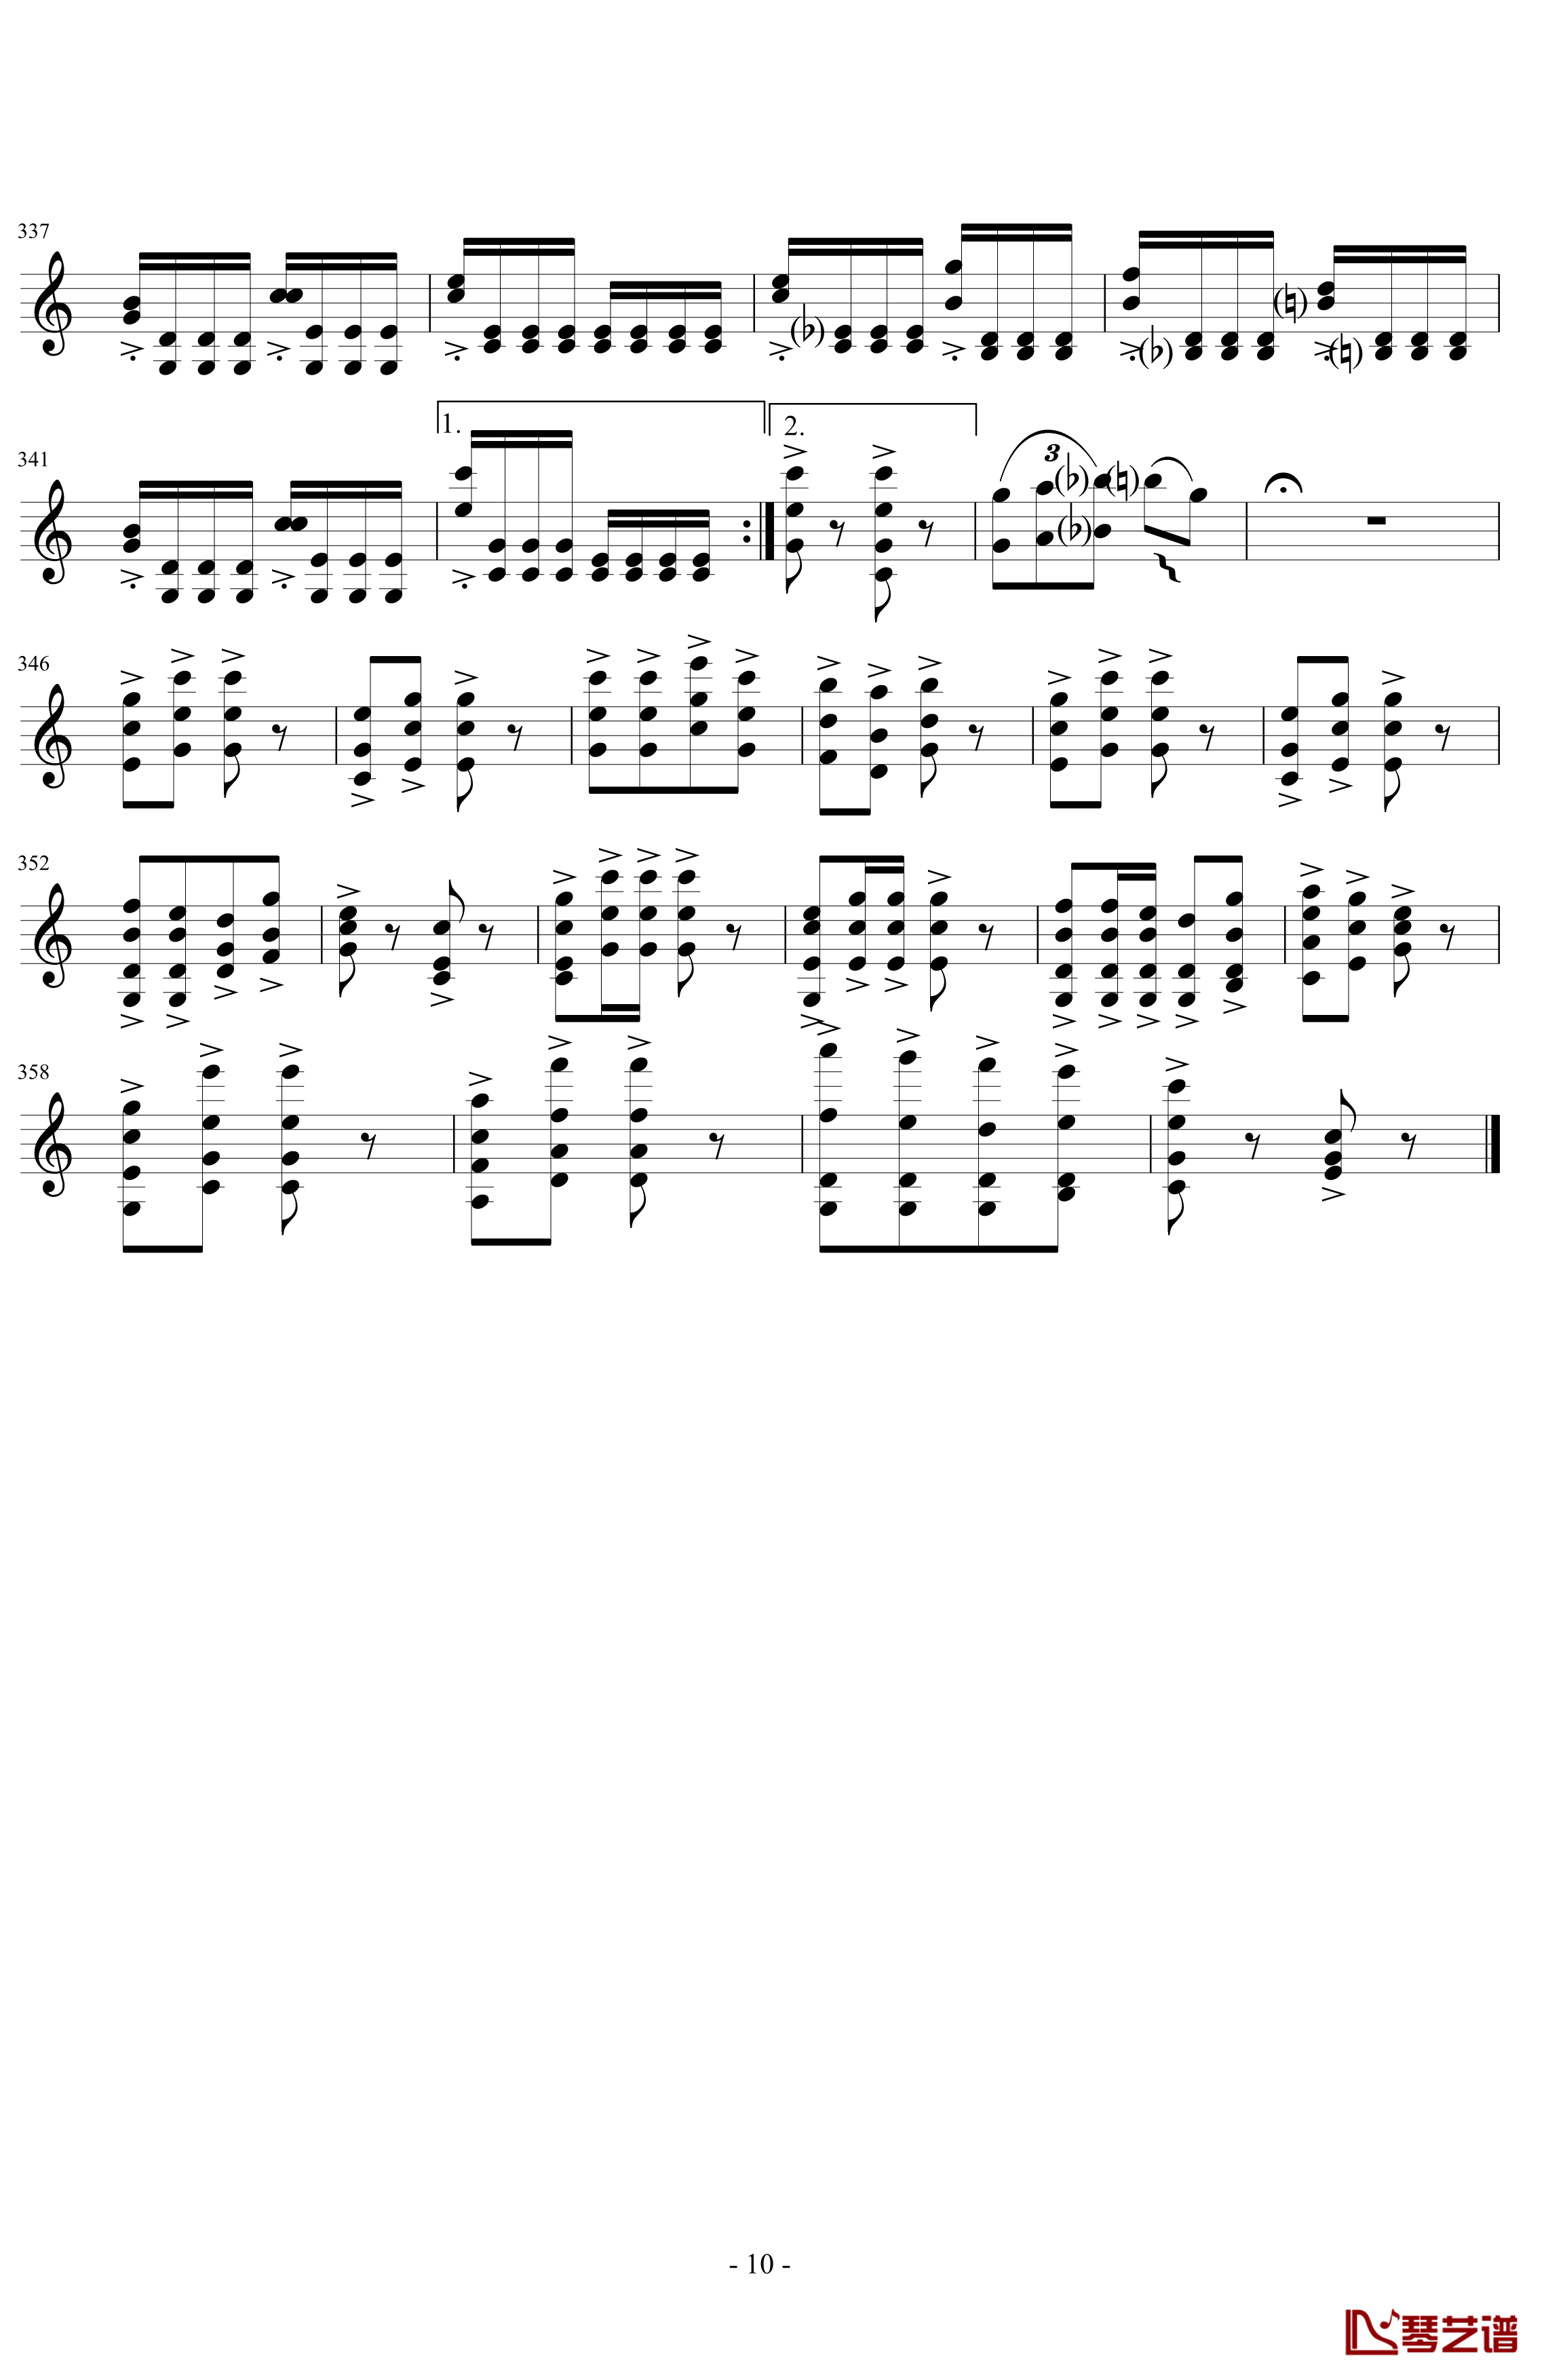 莫扎特主题变奏曲钢琴谱-DXF10